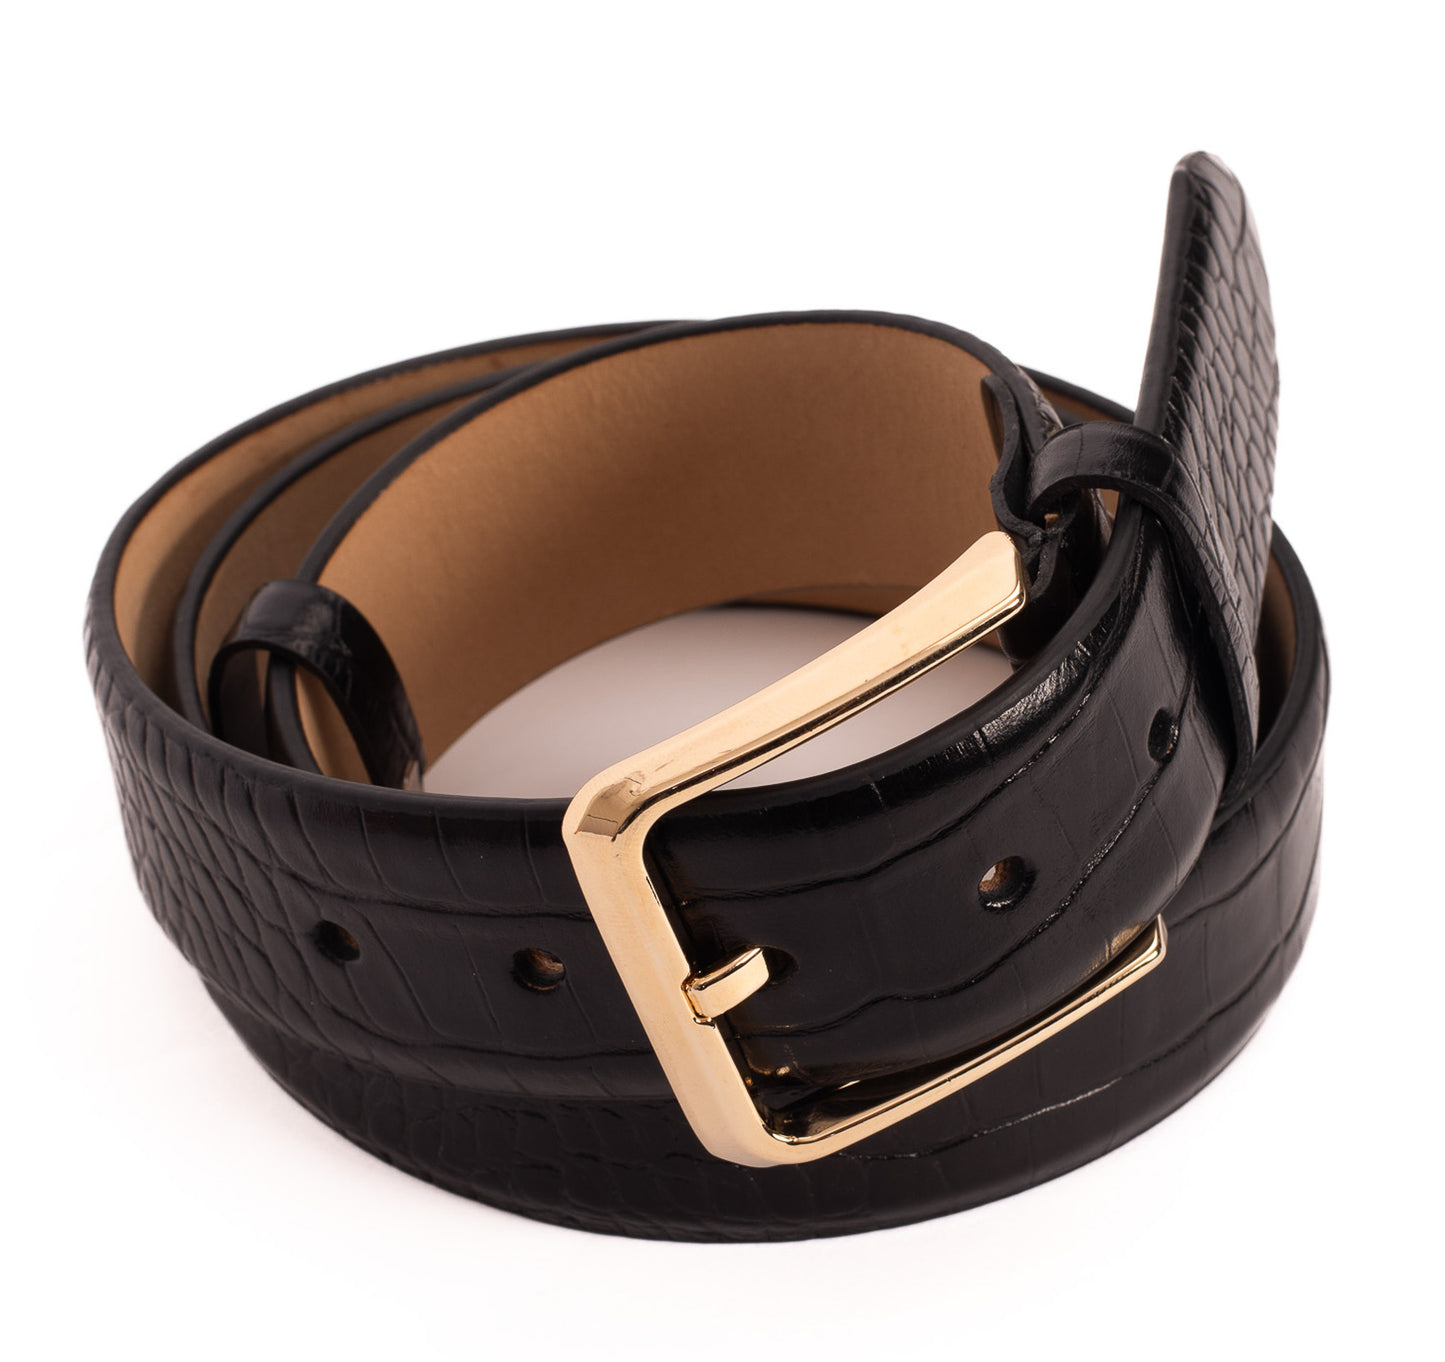 The Monaco Black Leather Belt – Vinci Leather Shoes